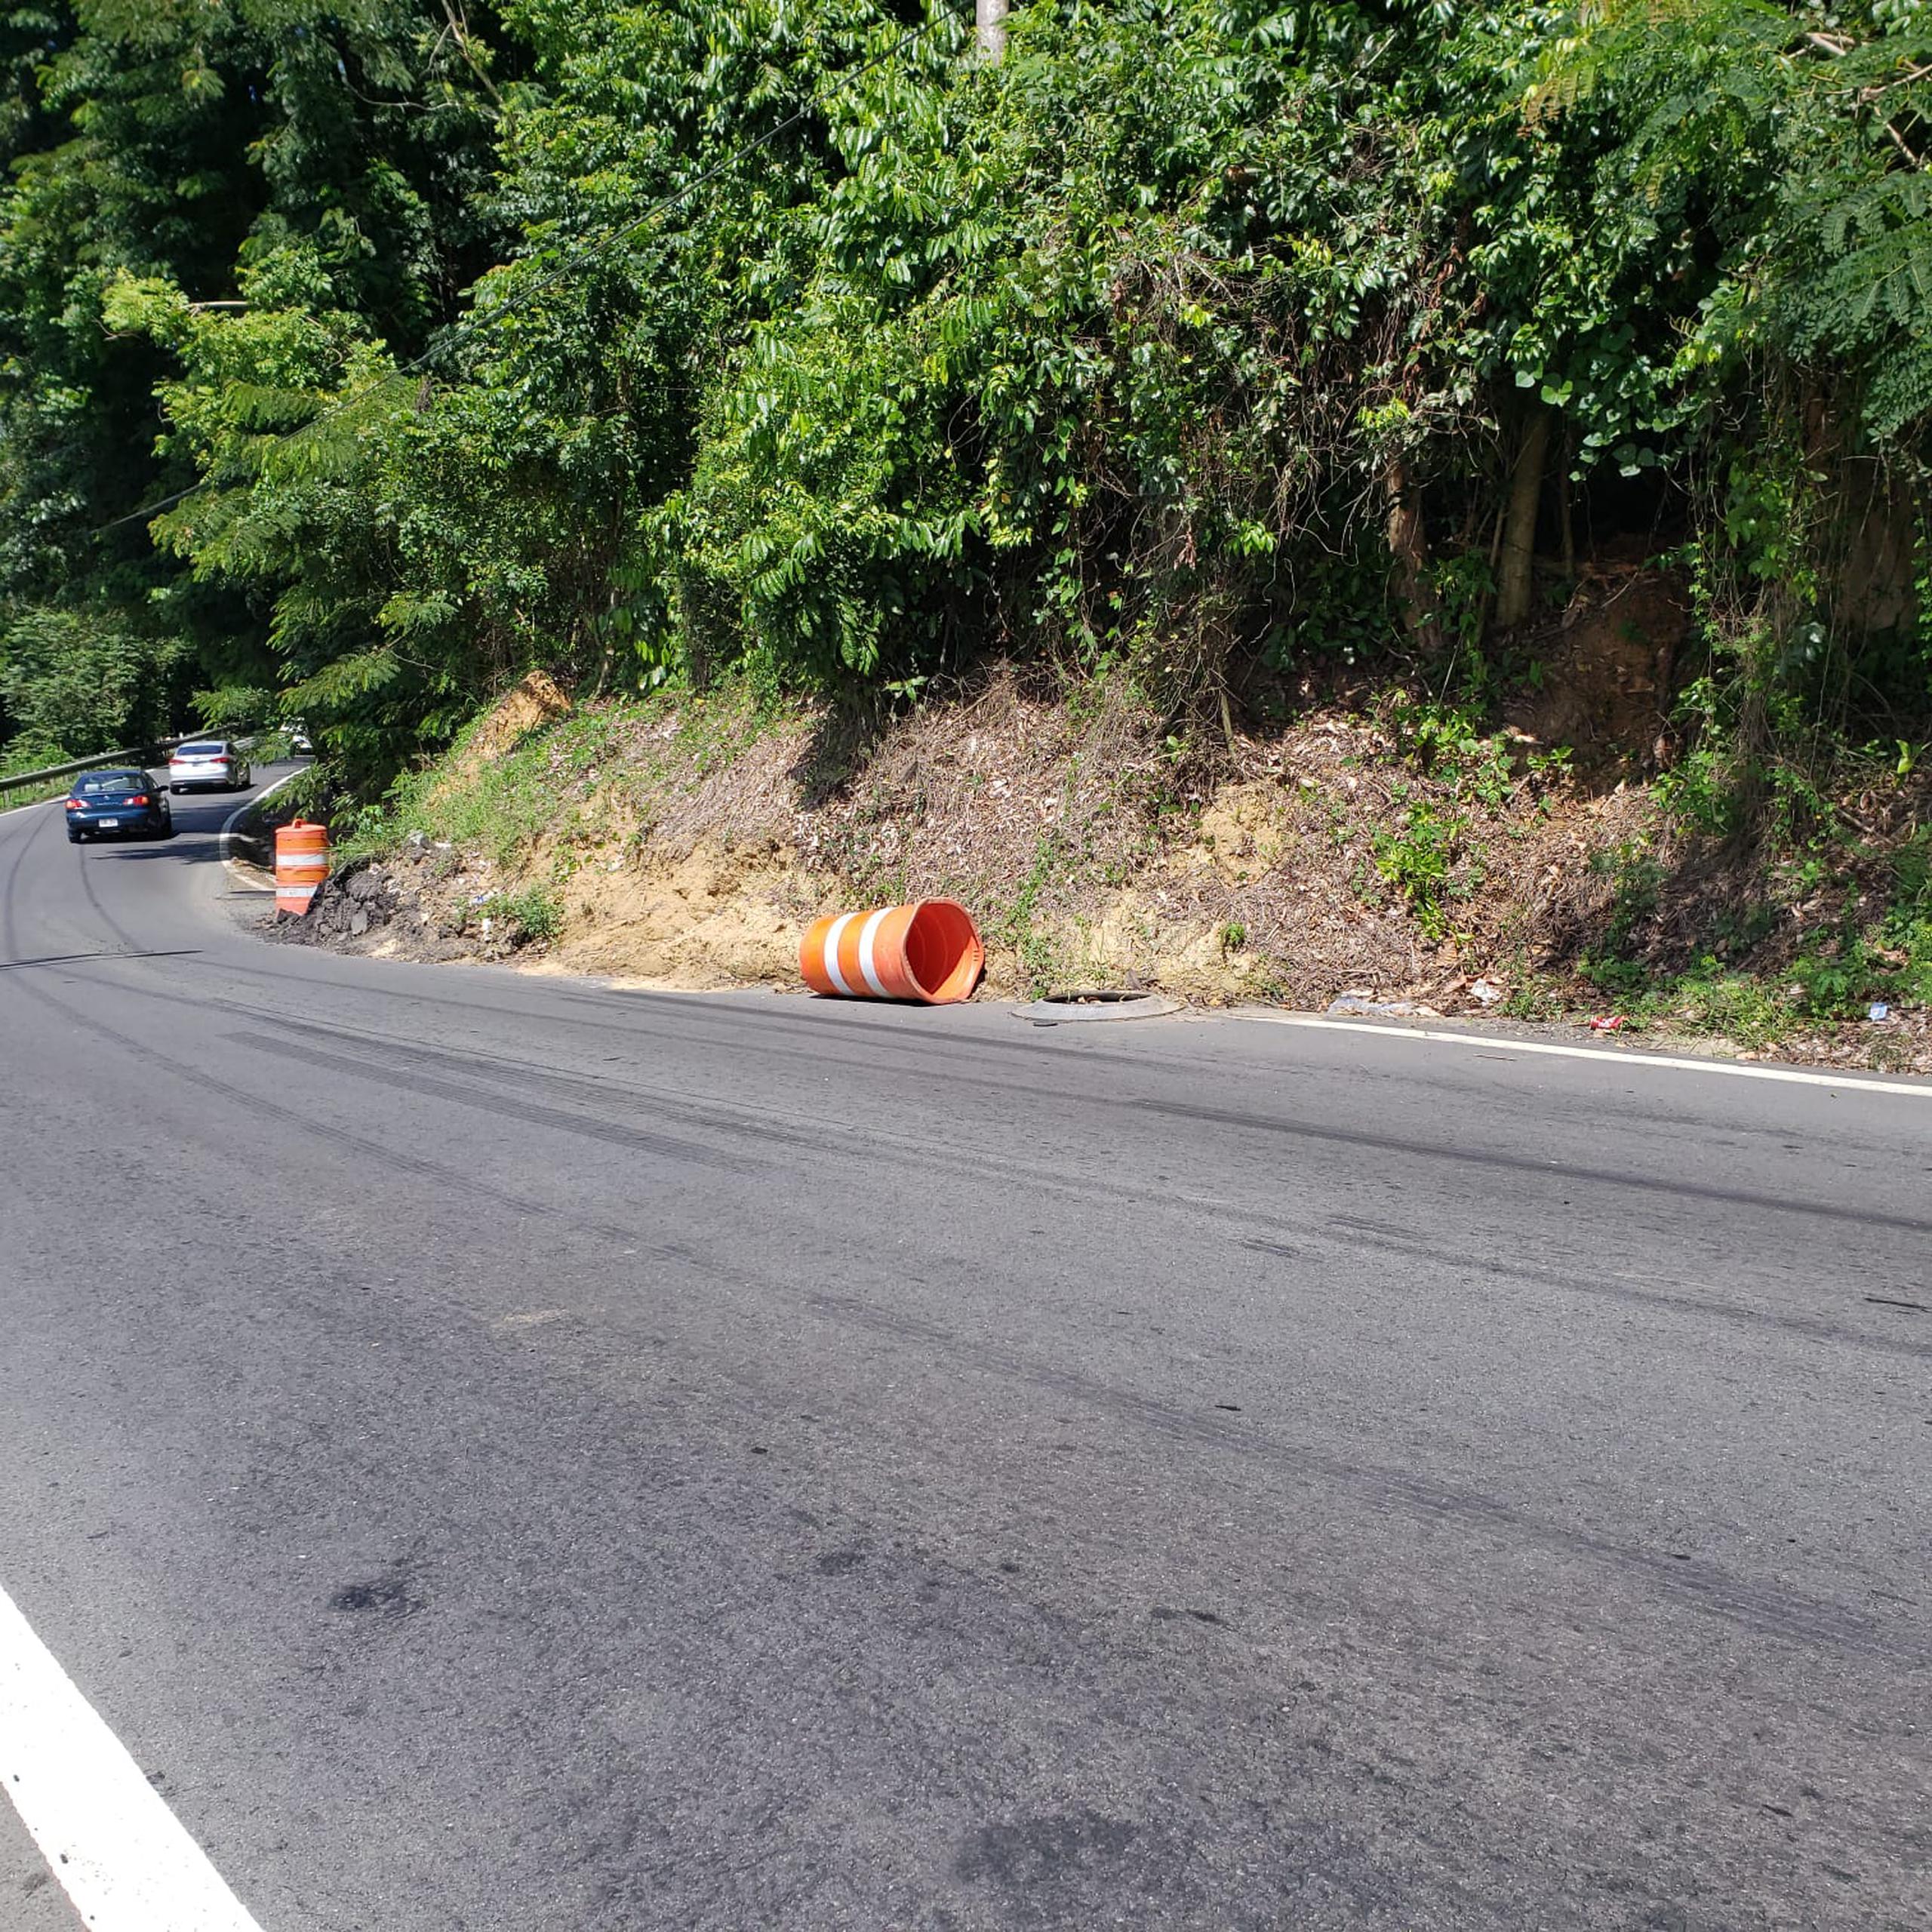 El derrumbe ocurrió en la carretera PR-861, mejor conocida como el área de las curvas y una de las rutas principales de Toa Alta.